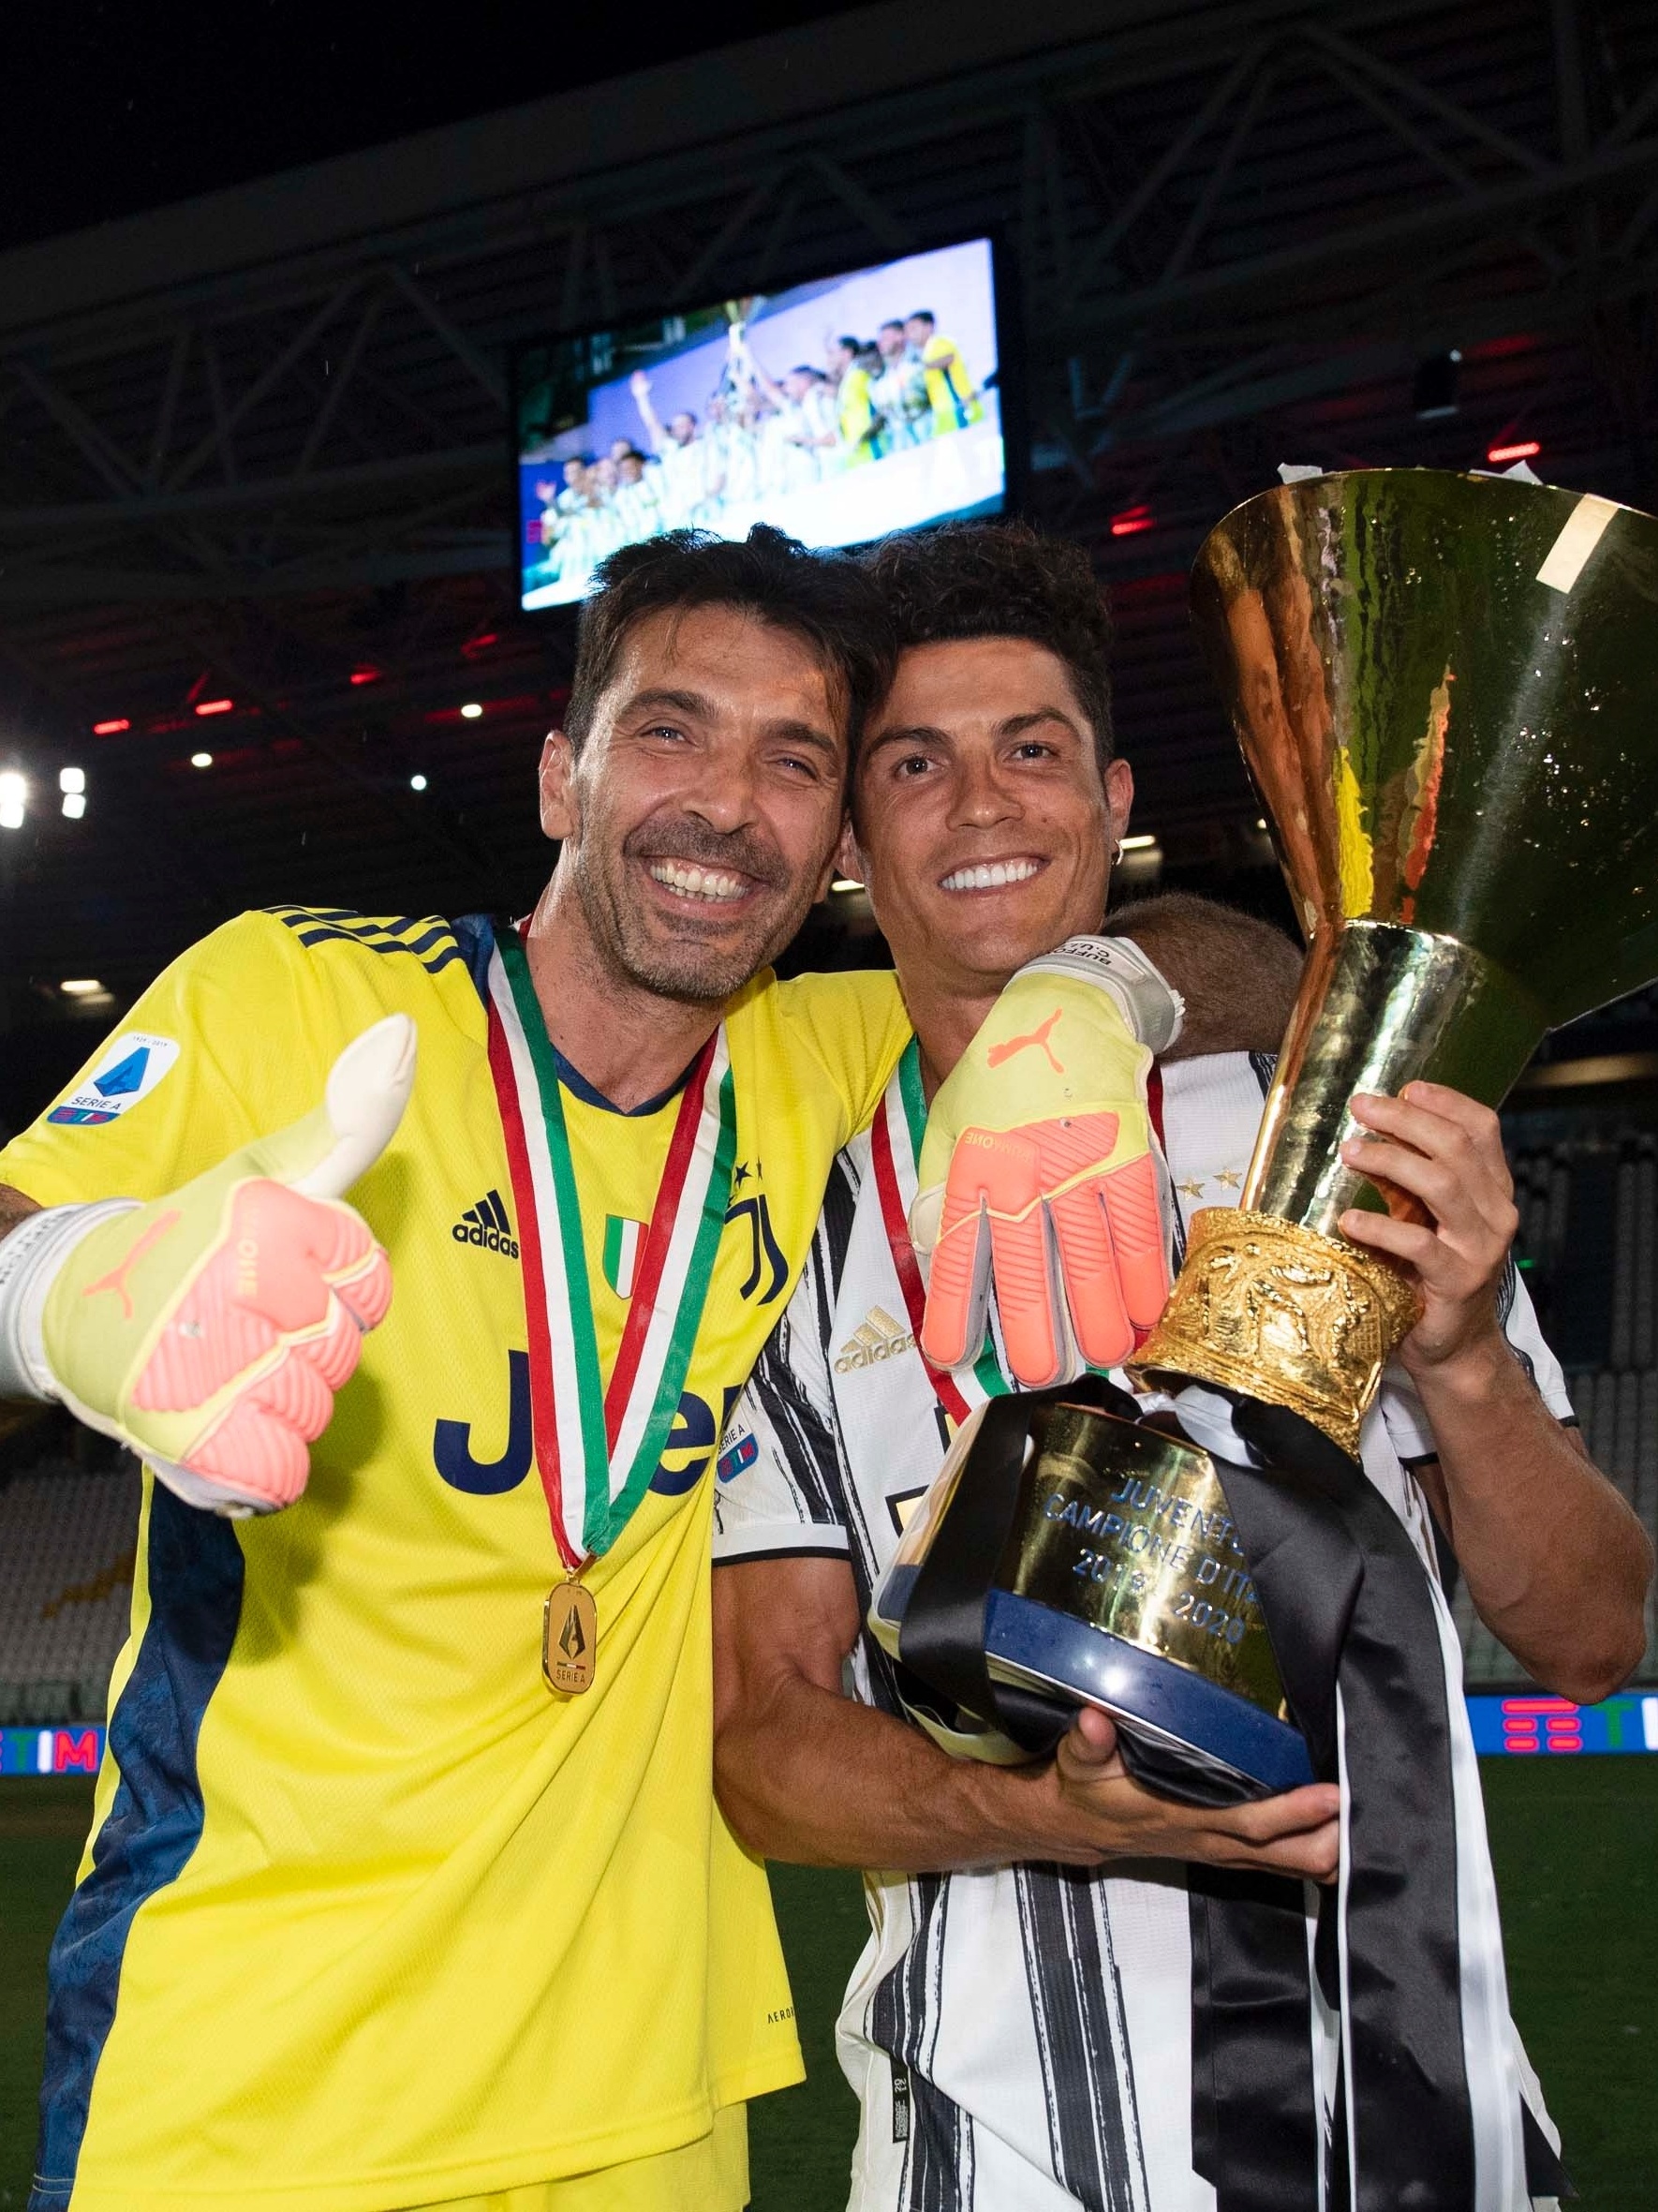 Campeonato Italiano será retomado em 20 de junho, diz governo